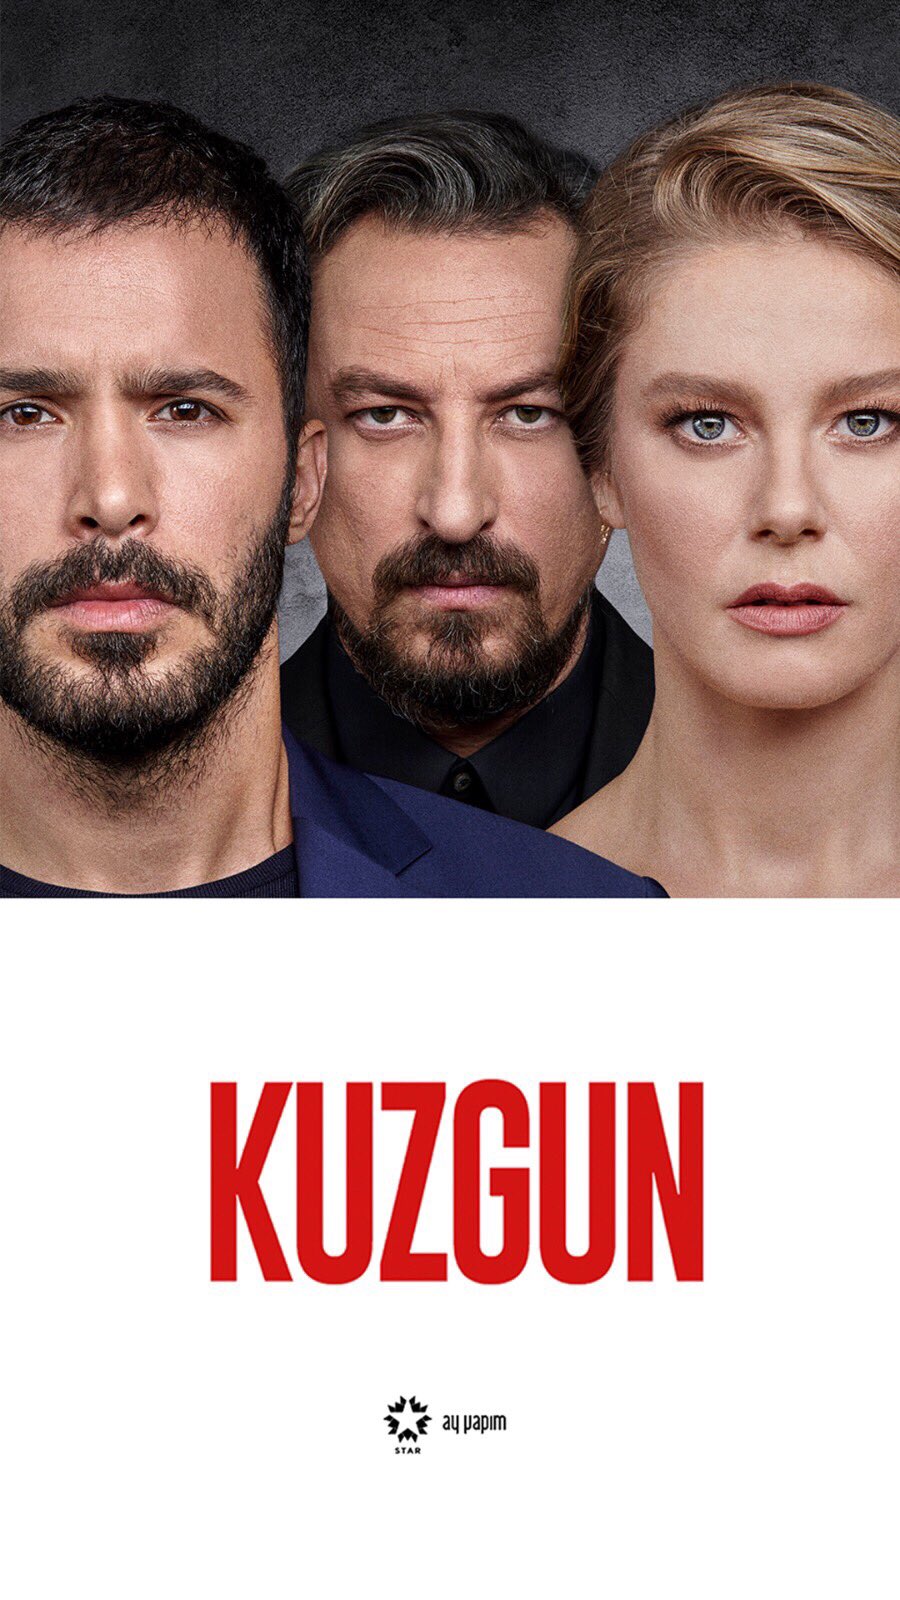 سریال Kuzgun 2019 کلاغ فصل اول [ دانلود و تماشای آنلاین ] رایگان